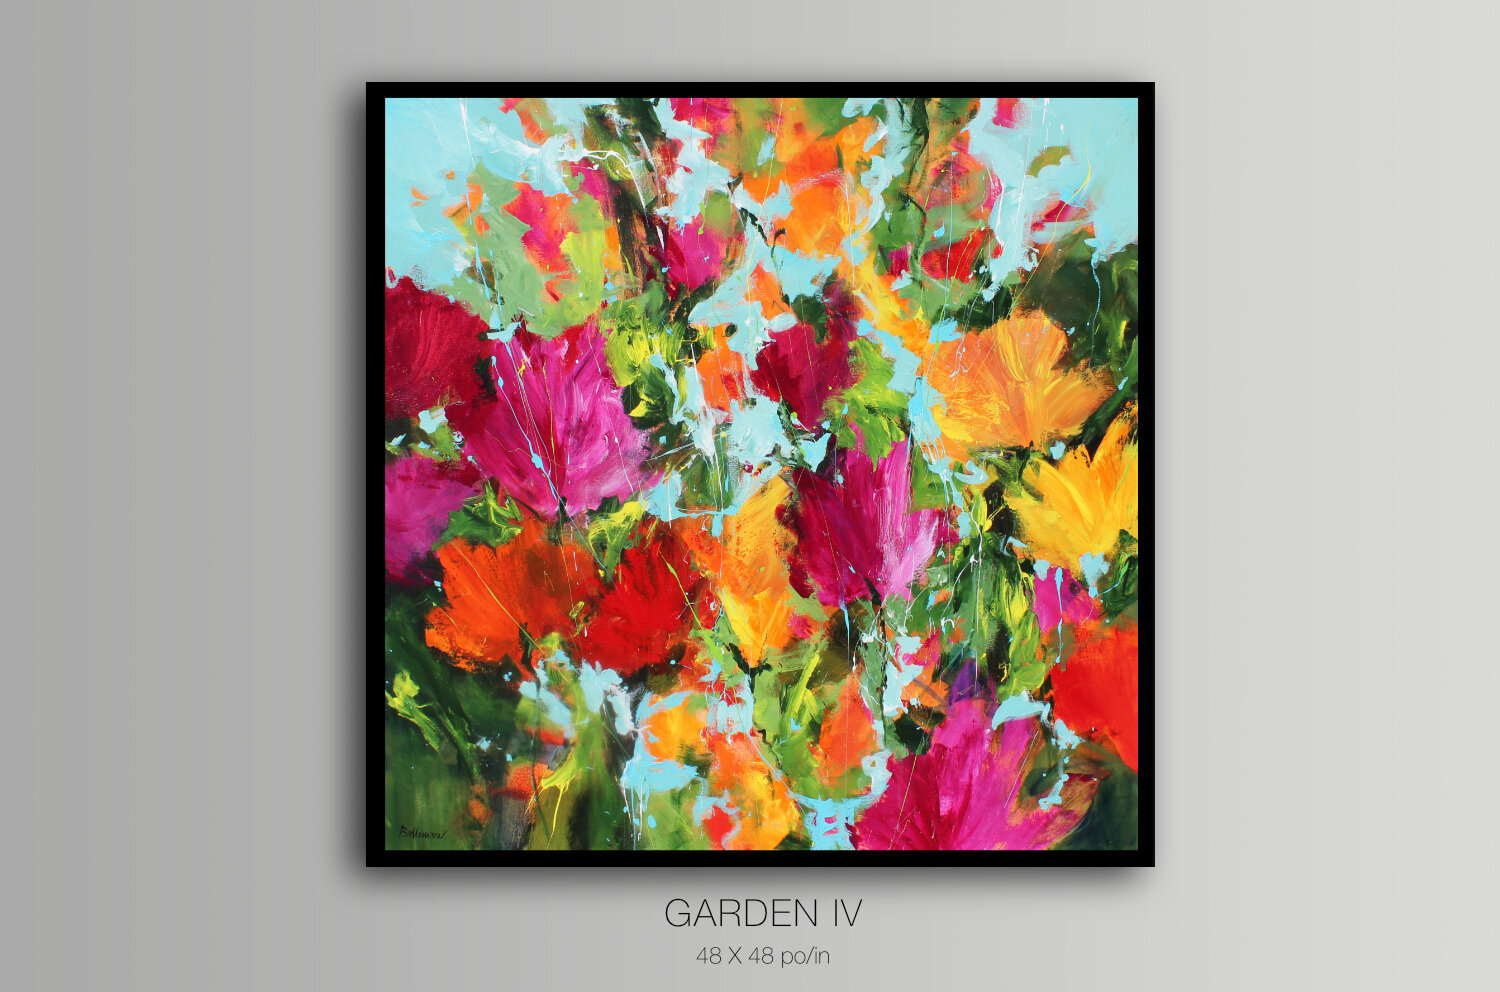 Garden IV - Organik Collection